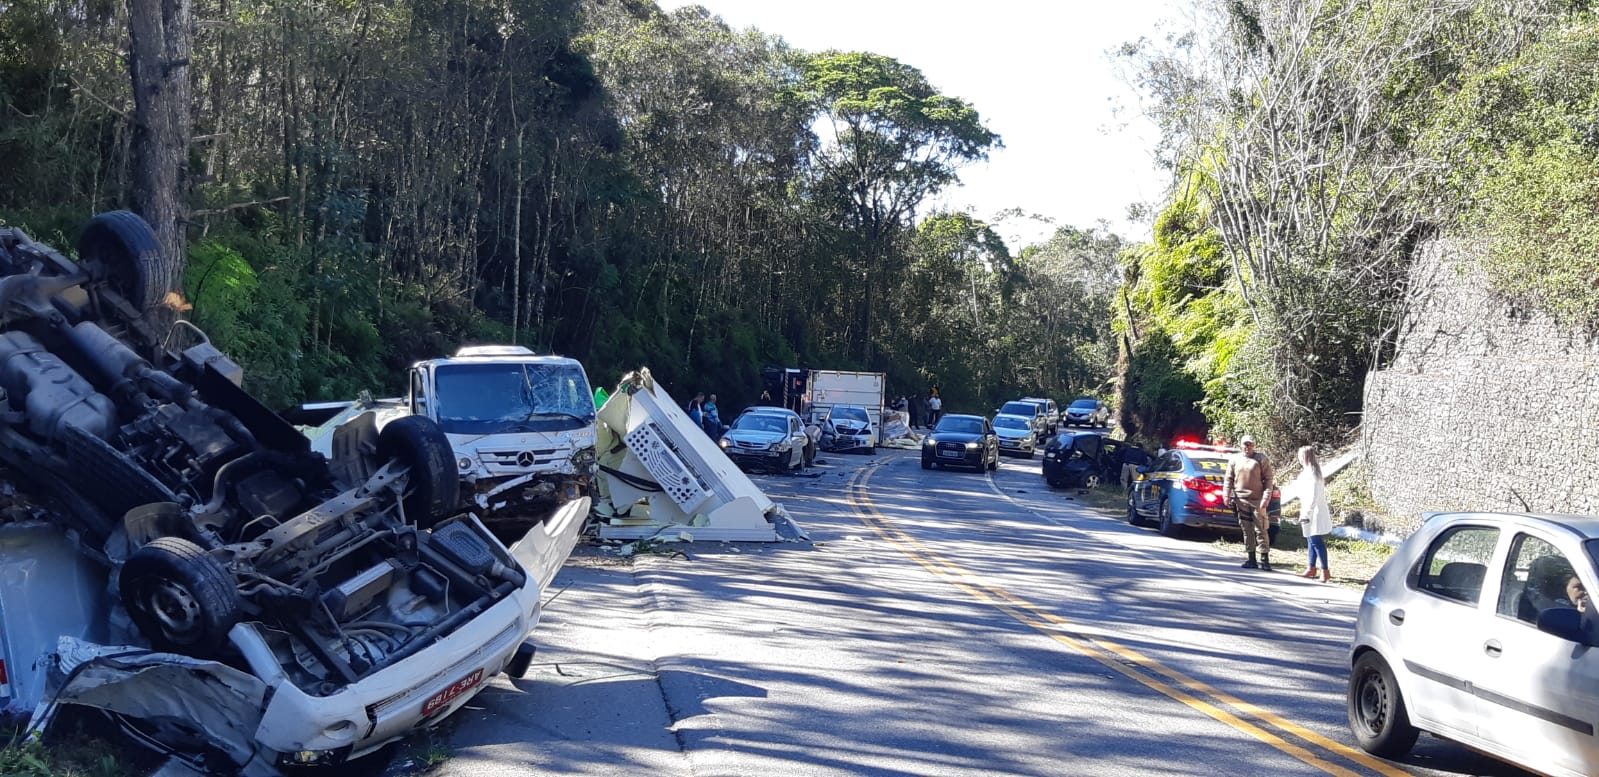 VÍDEO: Grave acidente envolvendo 8 veículos bloqueia BR-282 em Rancho Queimado